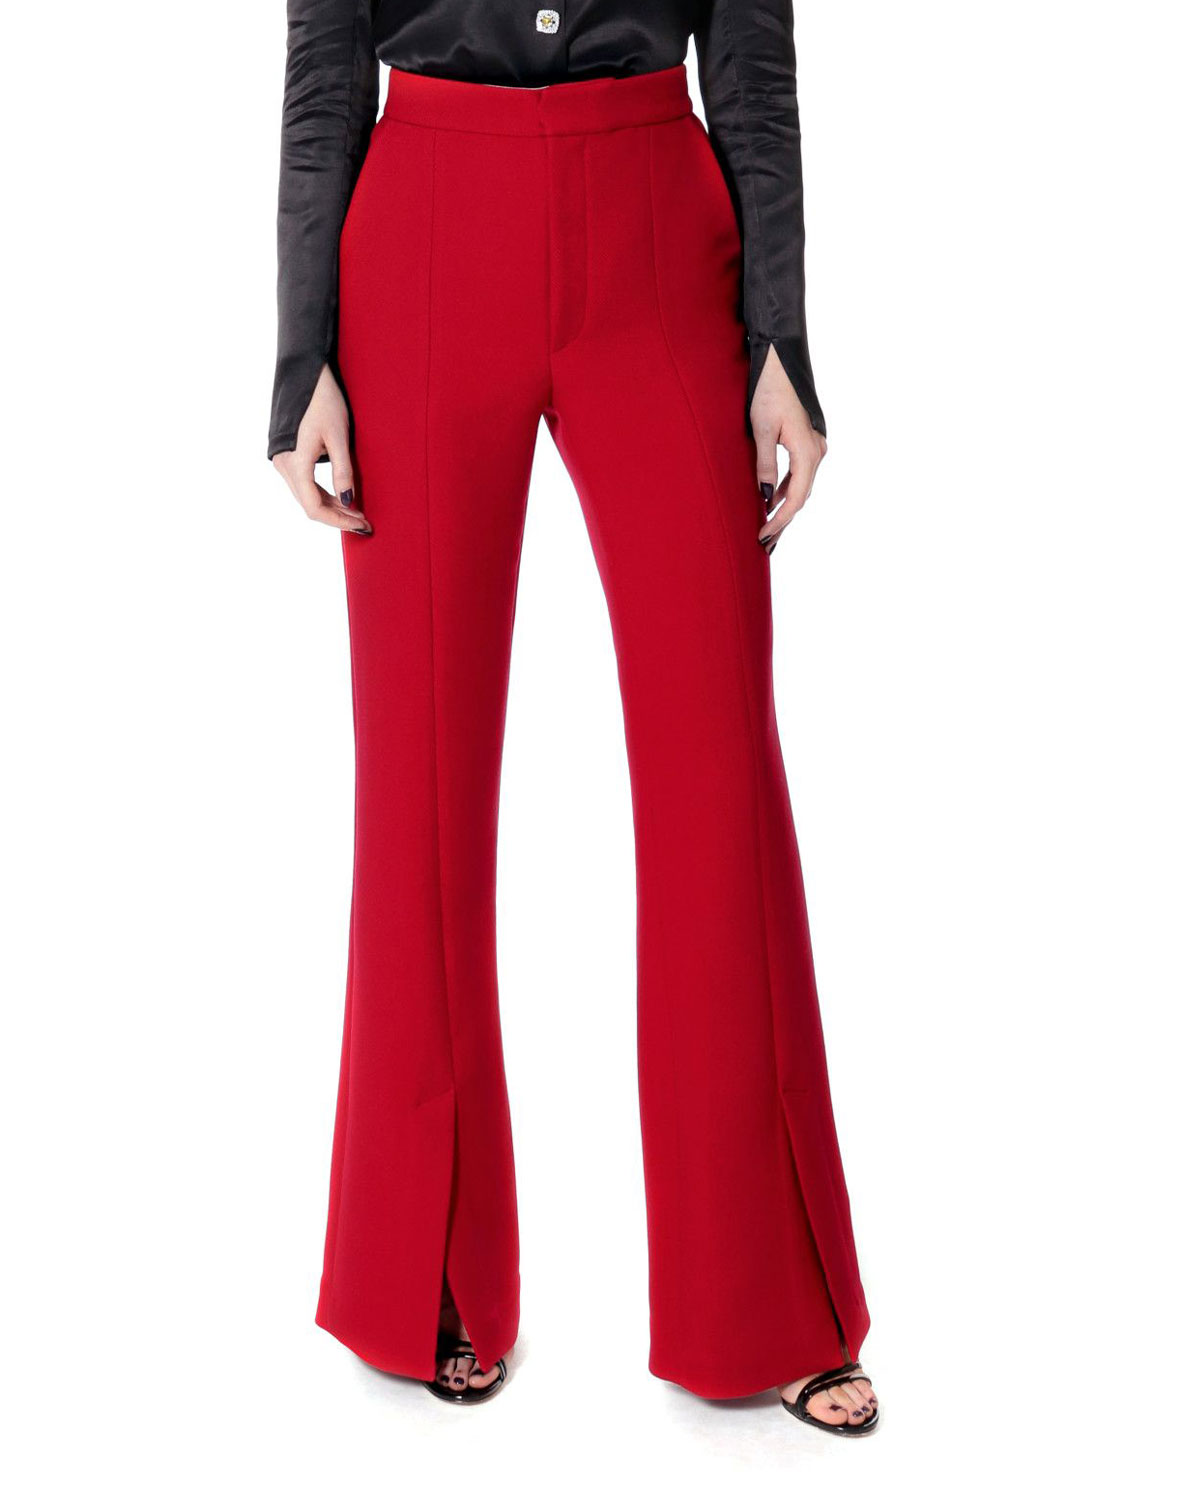 AGGI - Czerwone spodnie z rozcięciami Monica 1821MONICA